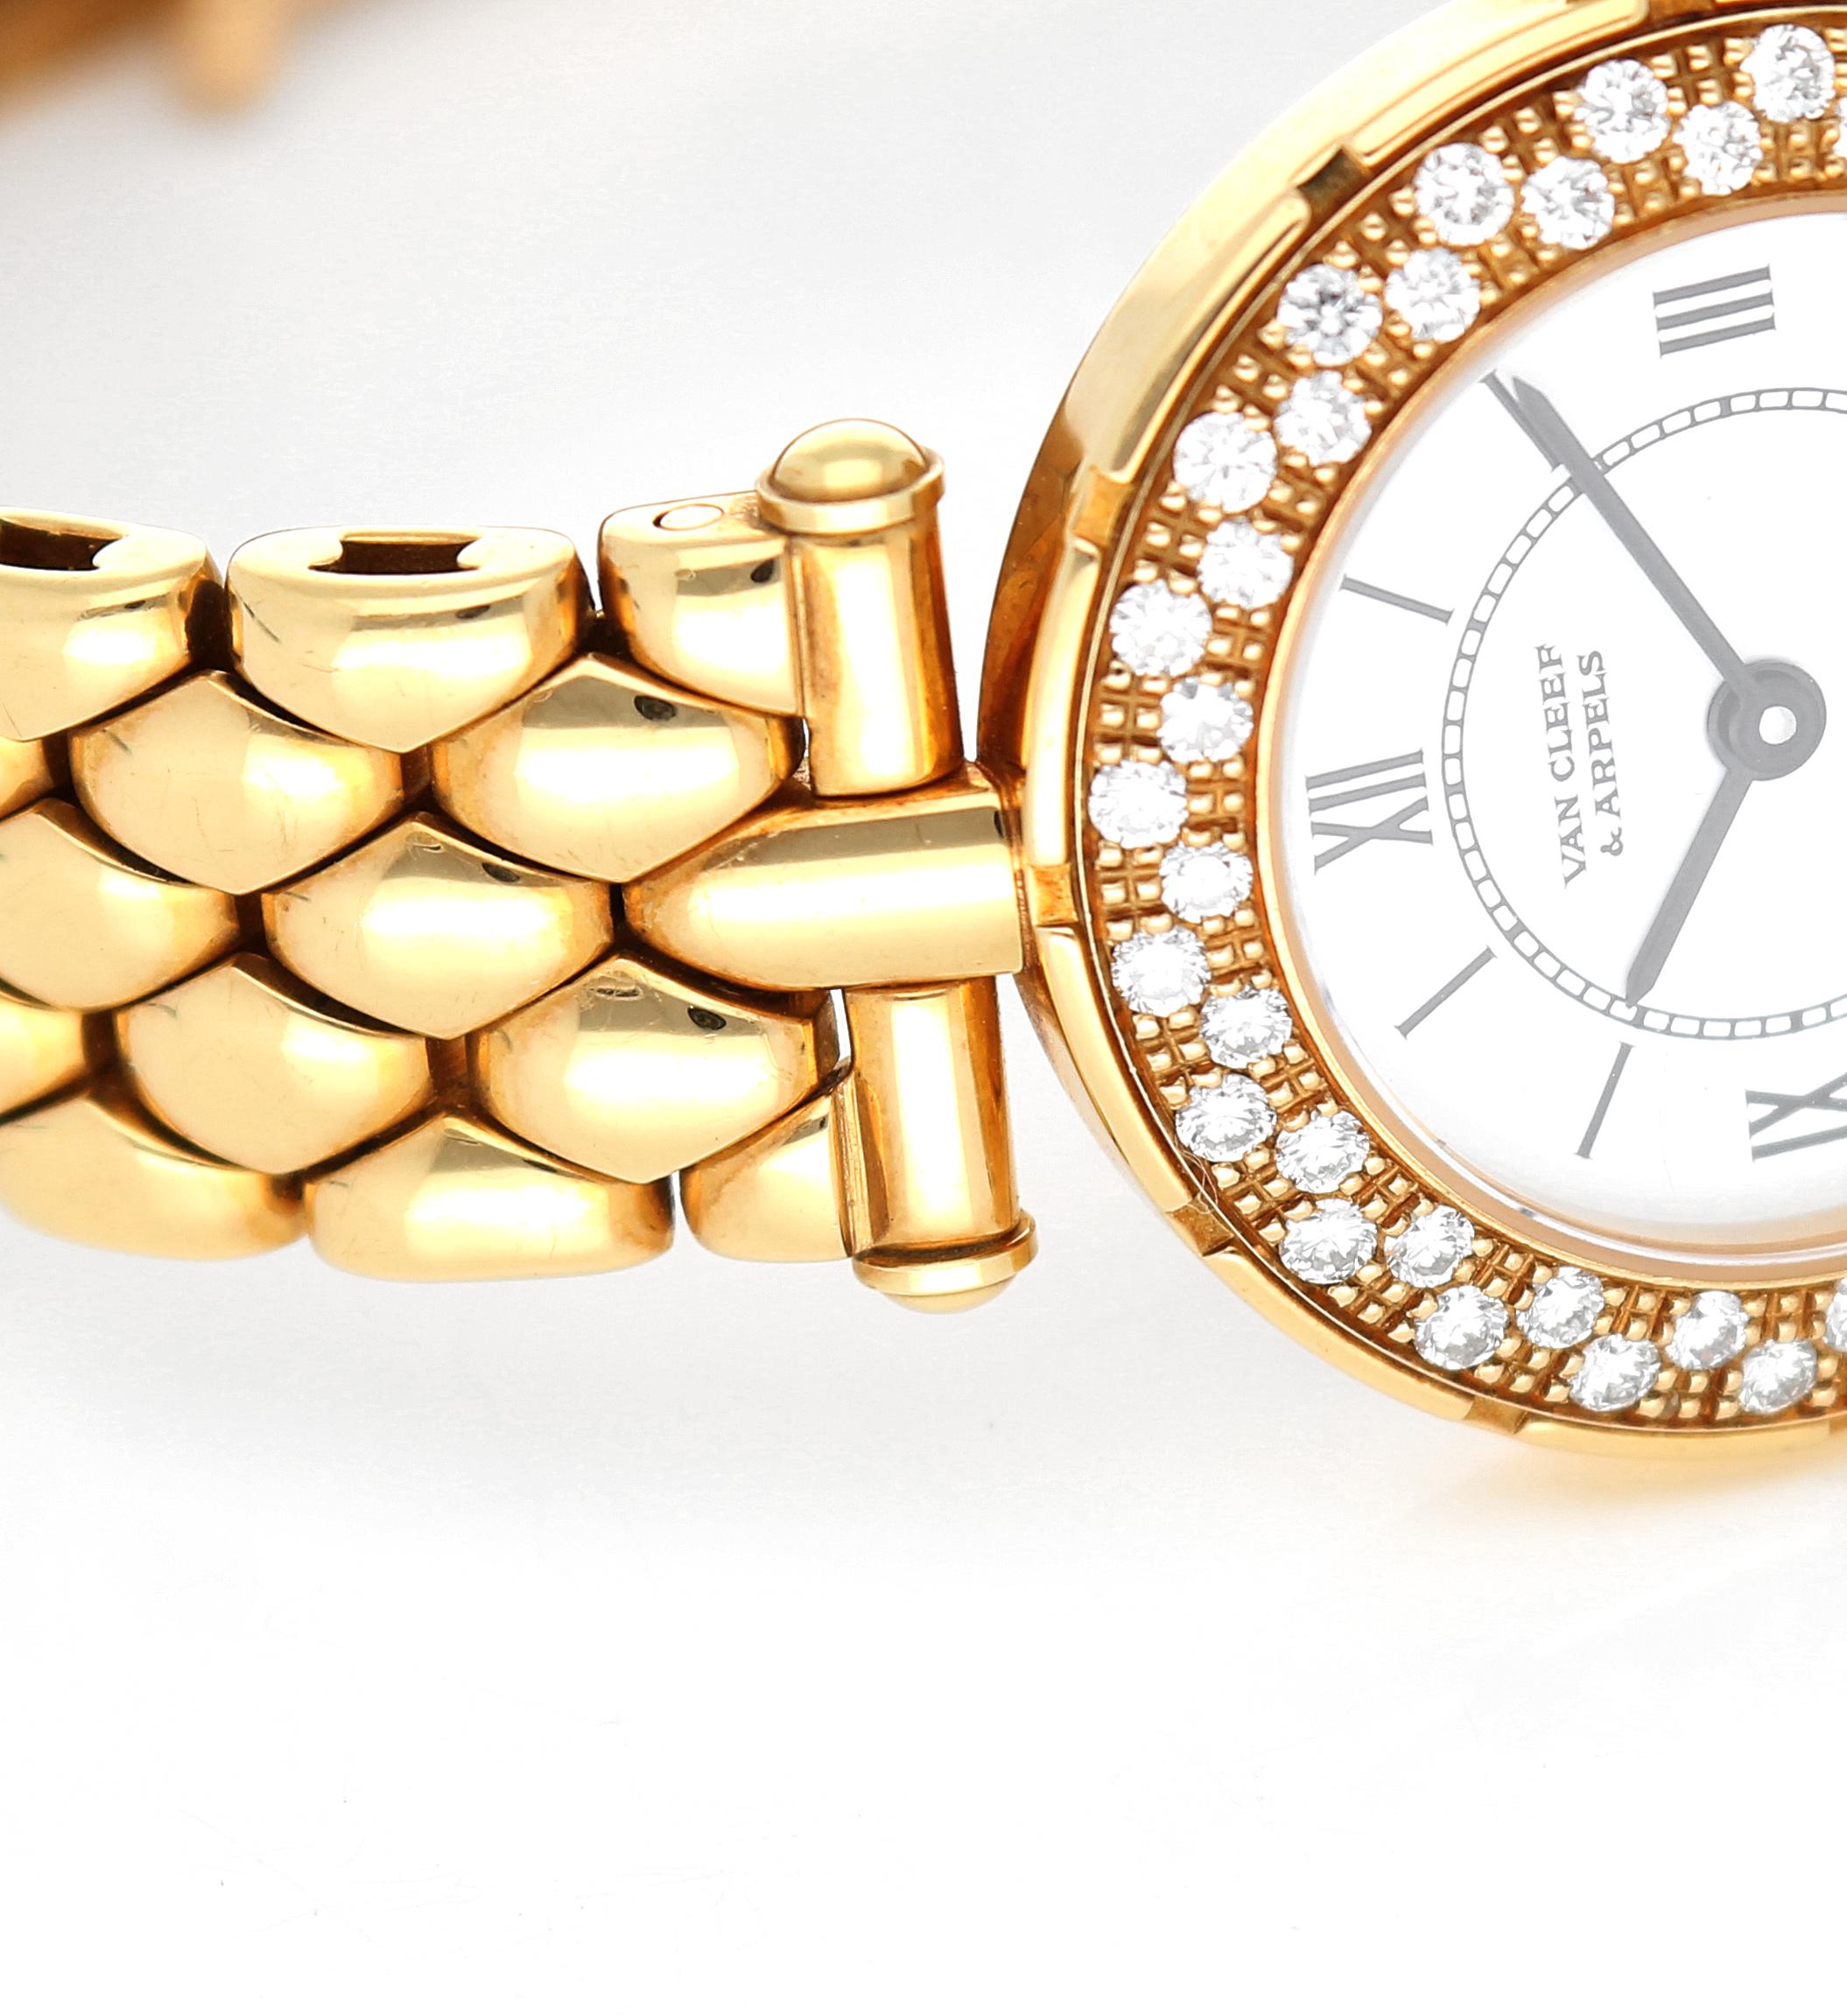 Retro Van Cleef & Arpels Watch with Diamonds in 18 Karat Gold